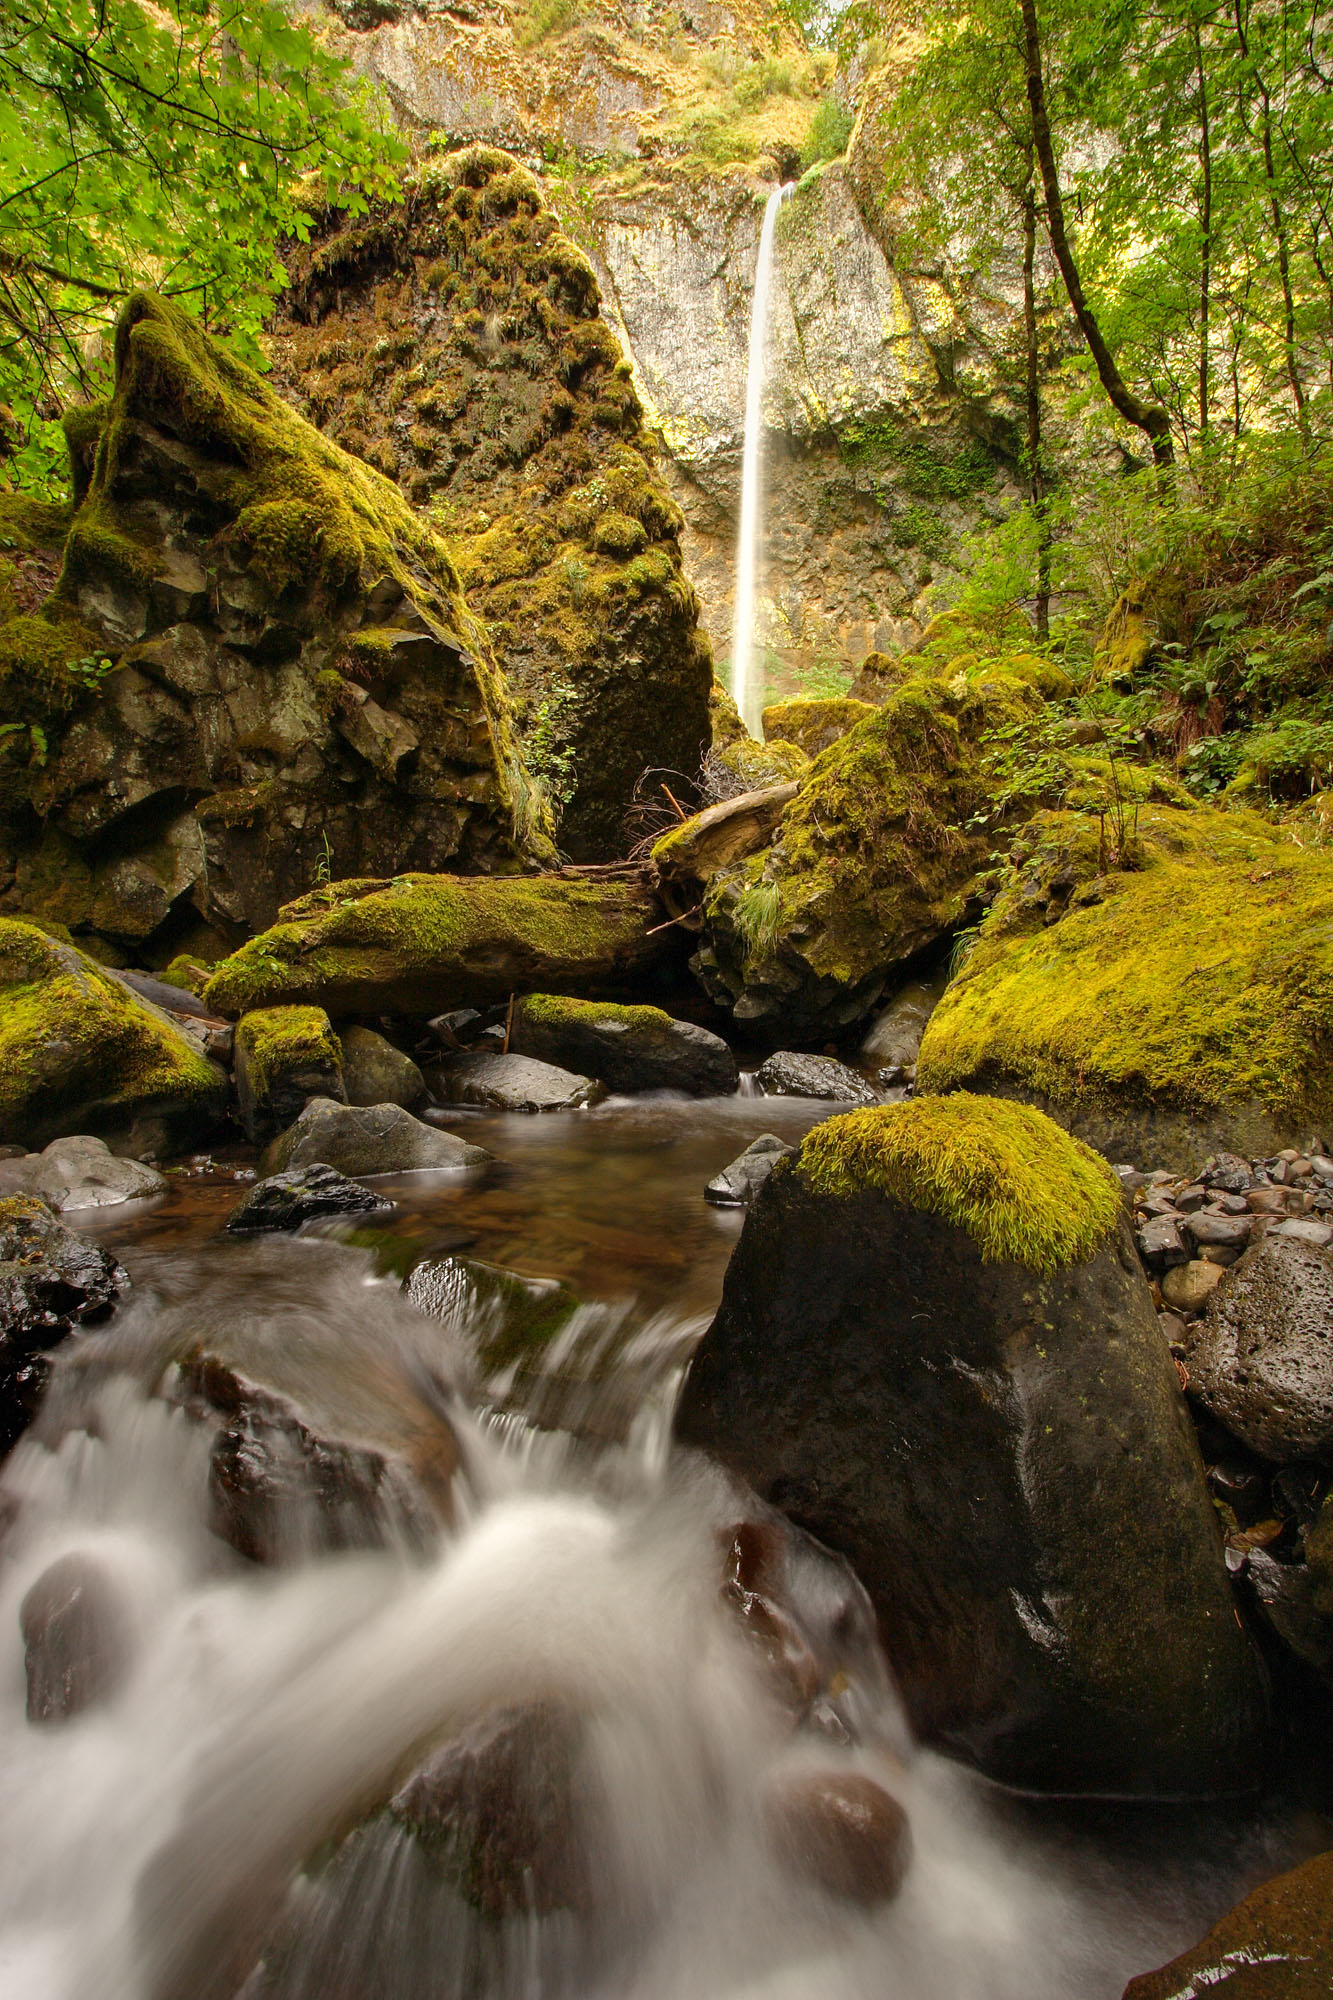 Der Elowah Falls Wasserfall des McCord Creeks in der Columbia River Gorge in Oregon fällt 65 m tief in ein natürliches Amphitheater aus geschichtetem Basalt, Flechten und Moosen.